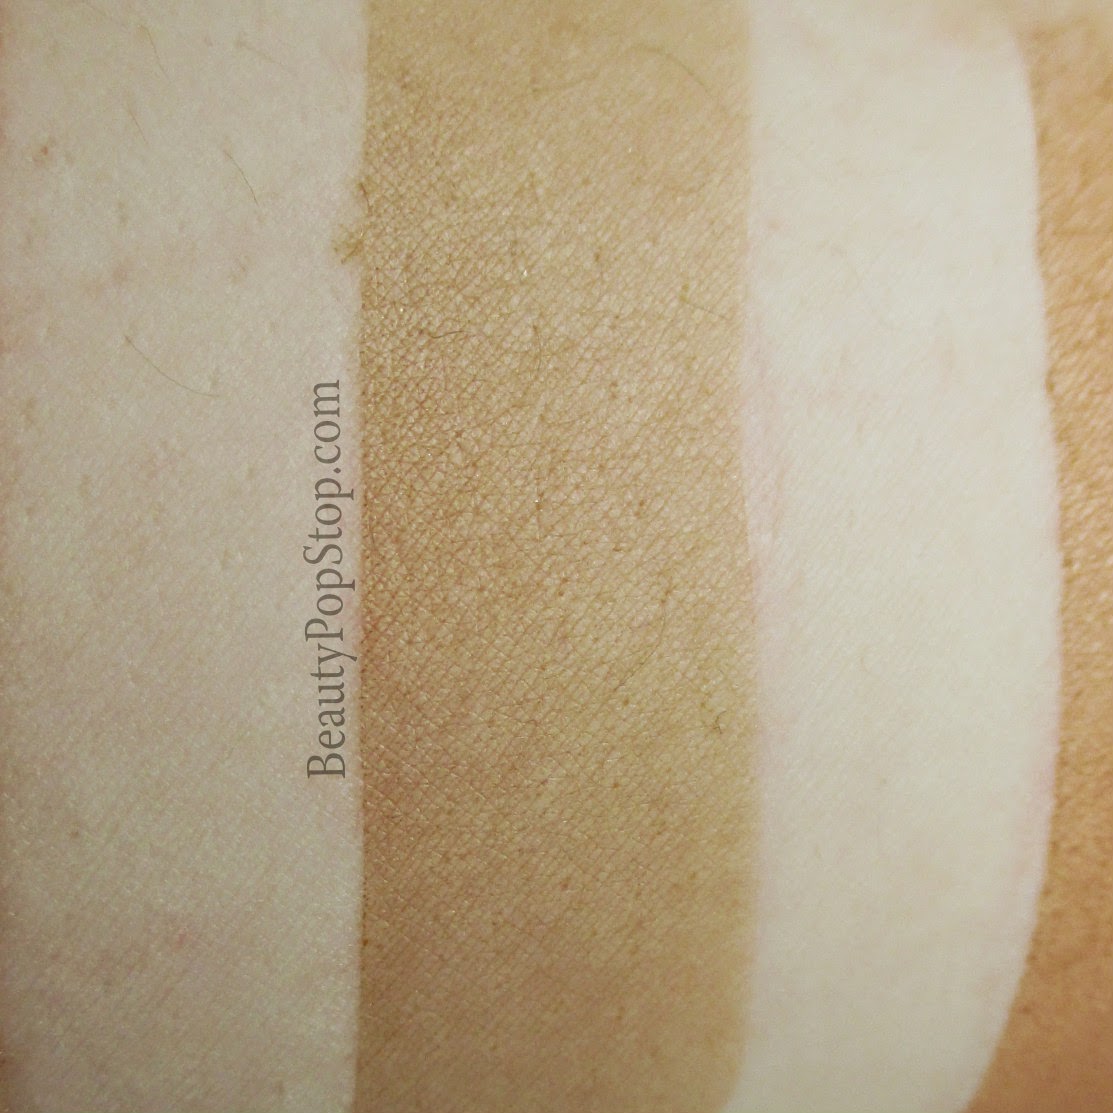 perfekt matte body perfection gel in tan swatch